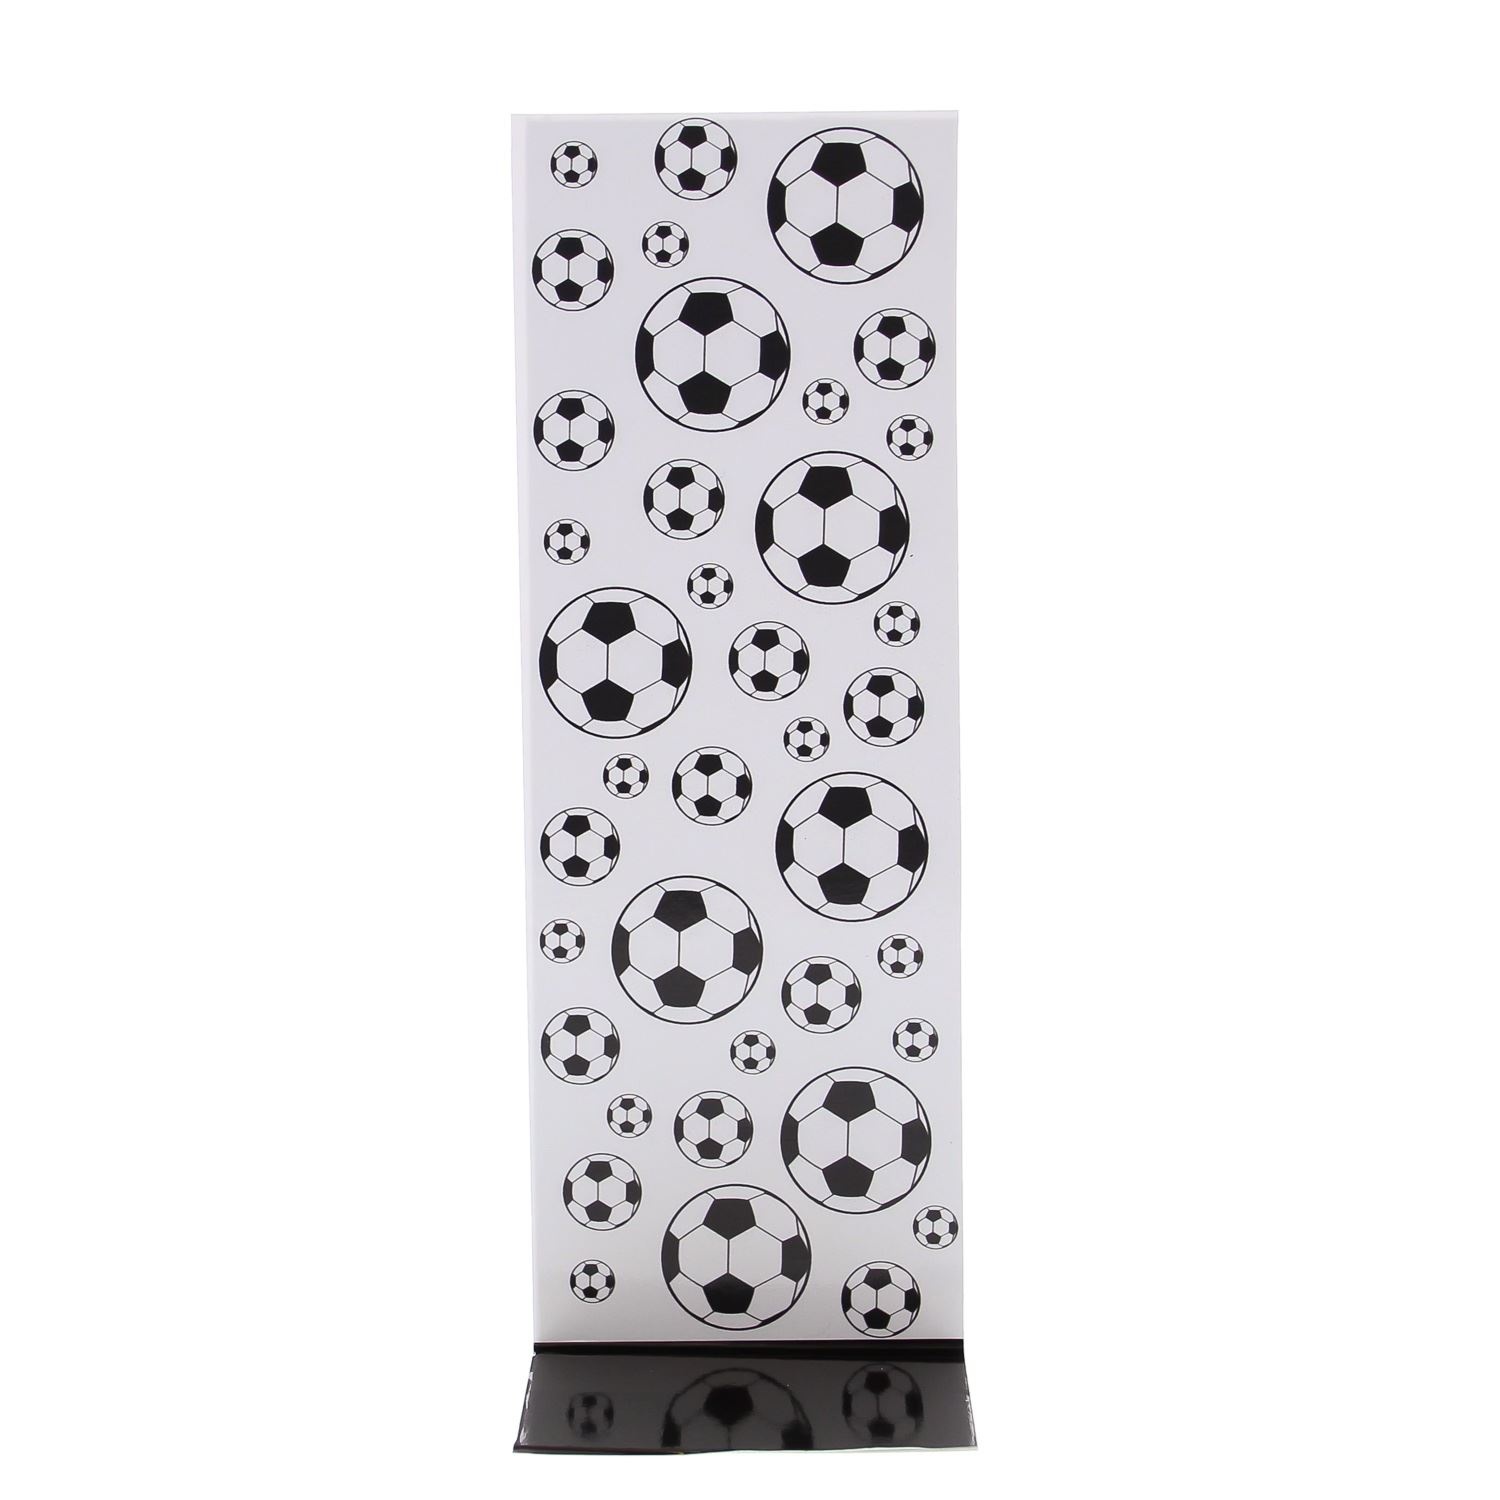 J-karton "Black & white" voetbal  - 77*215*50 mm - 50 stuks